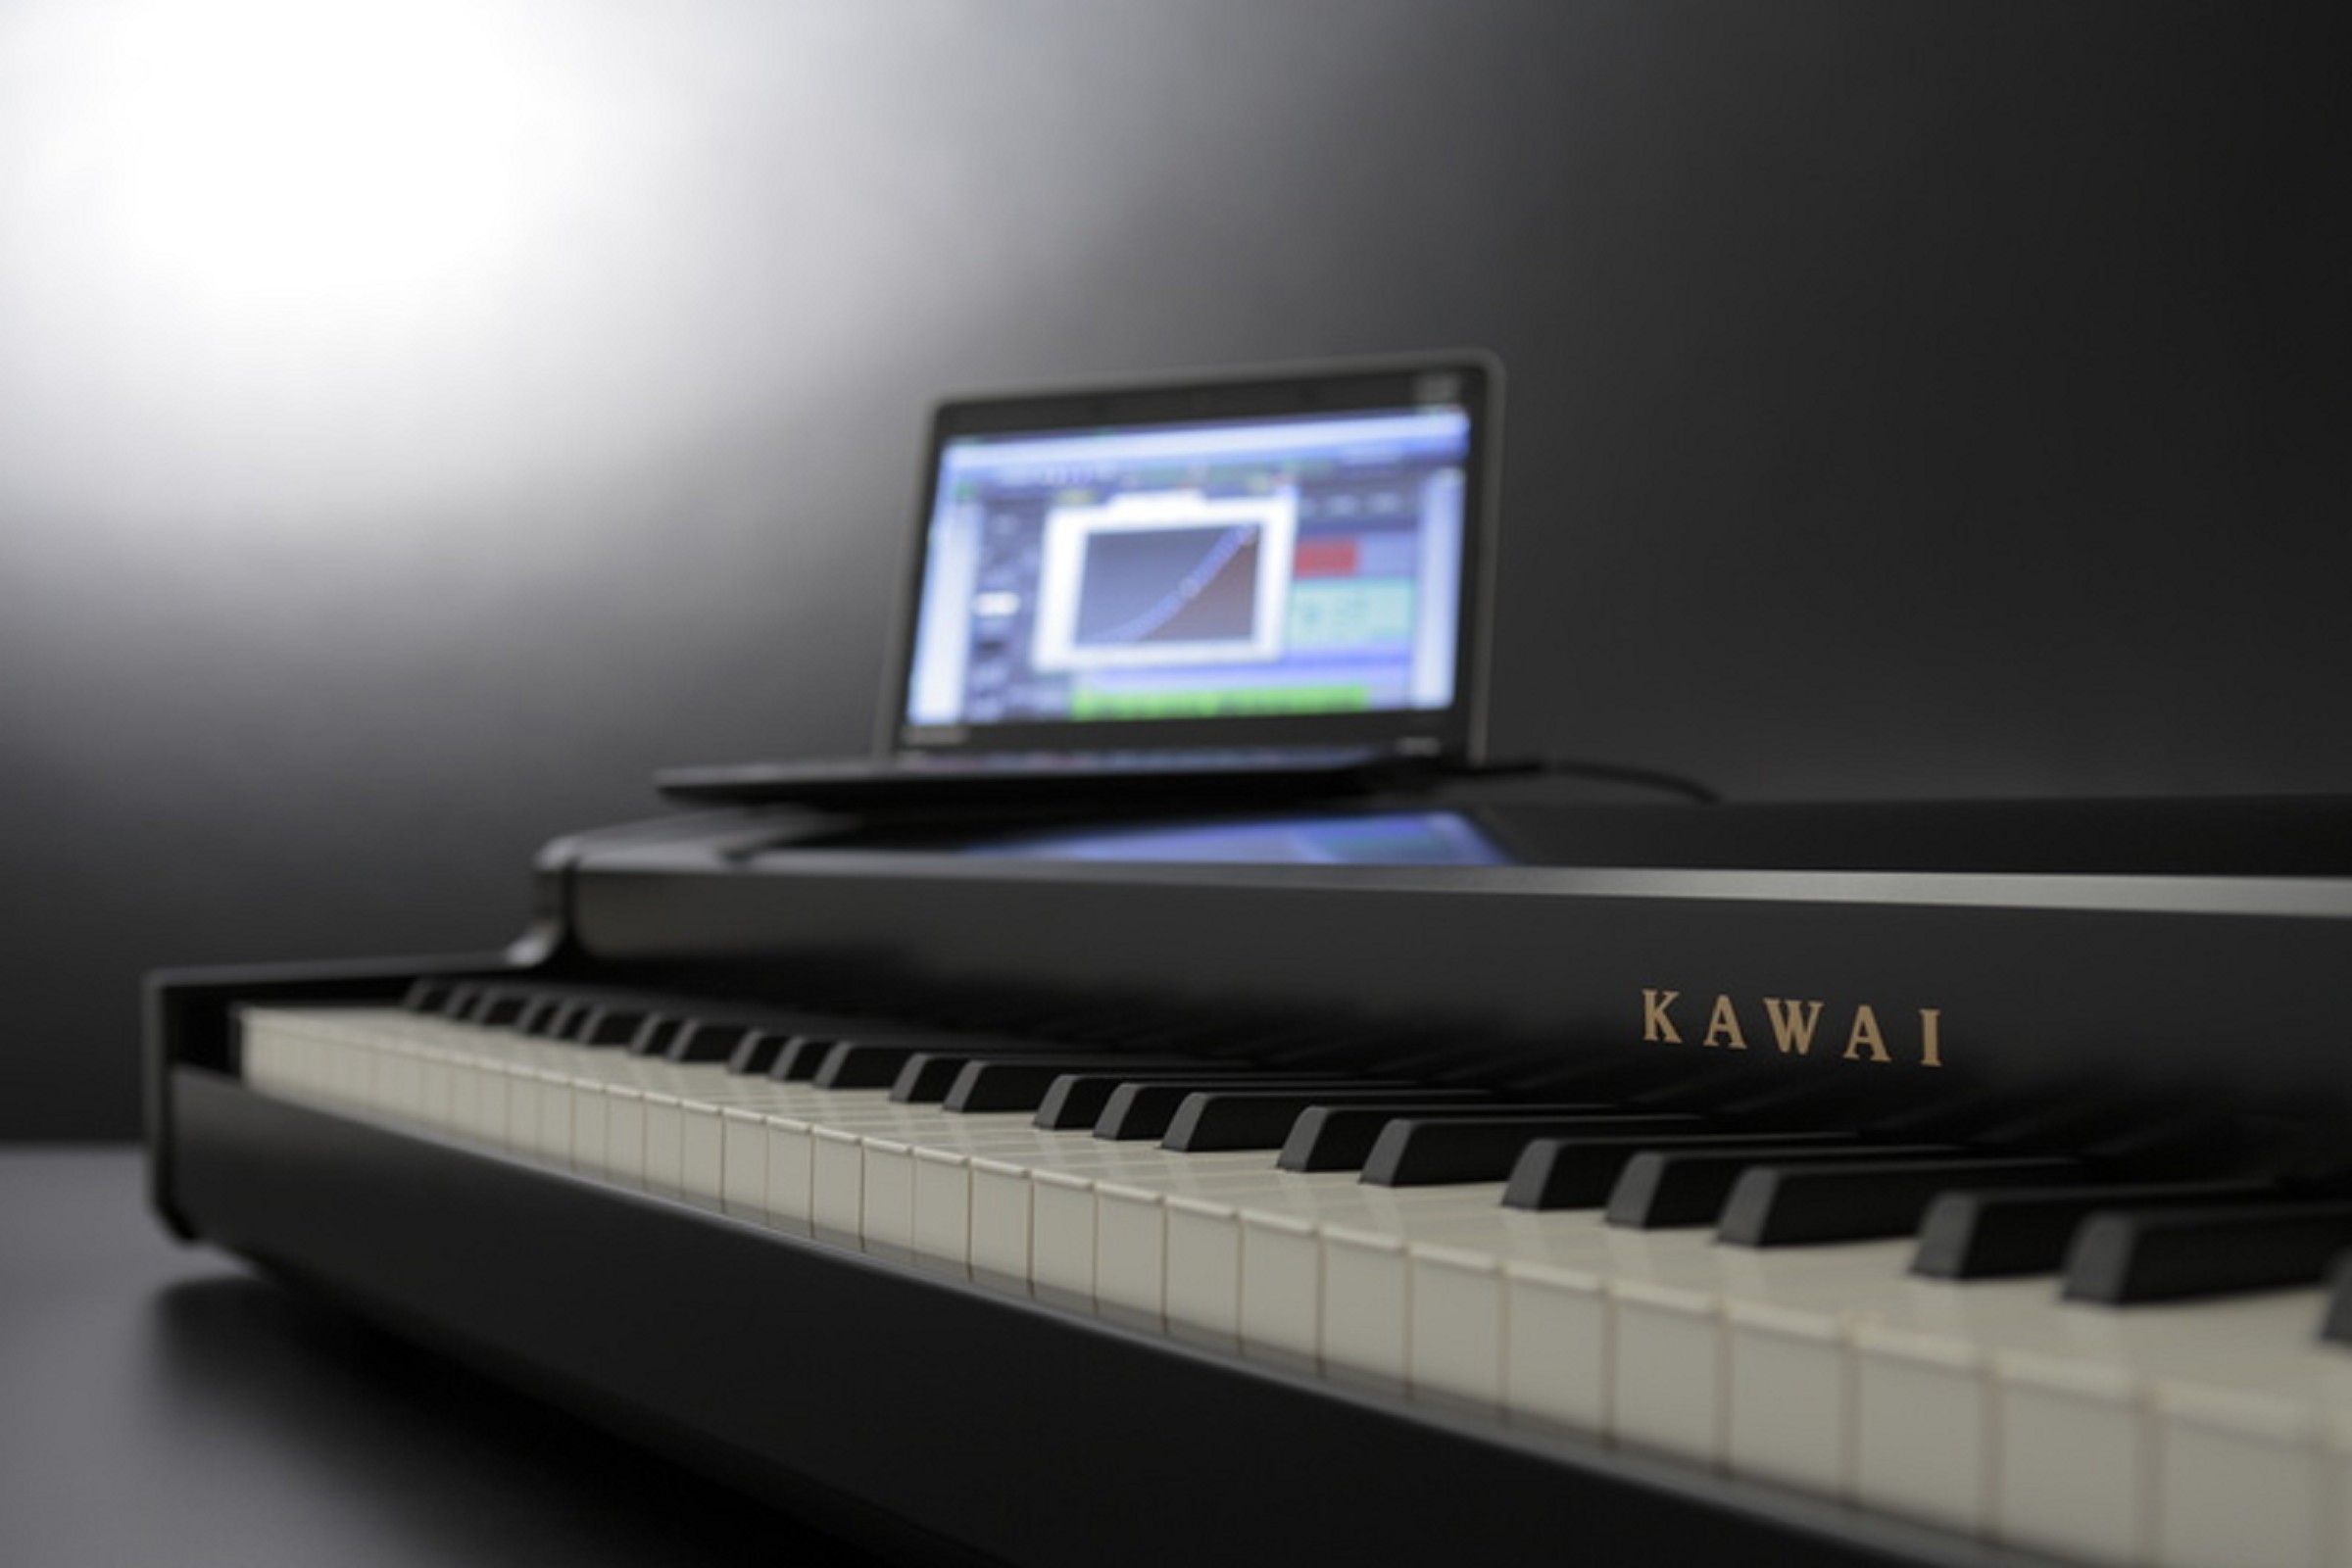 Kawai VPC-1 MIDI Keyboard schwarz